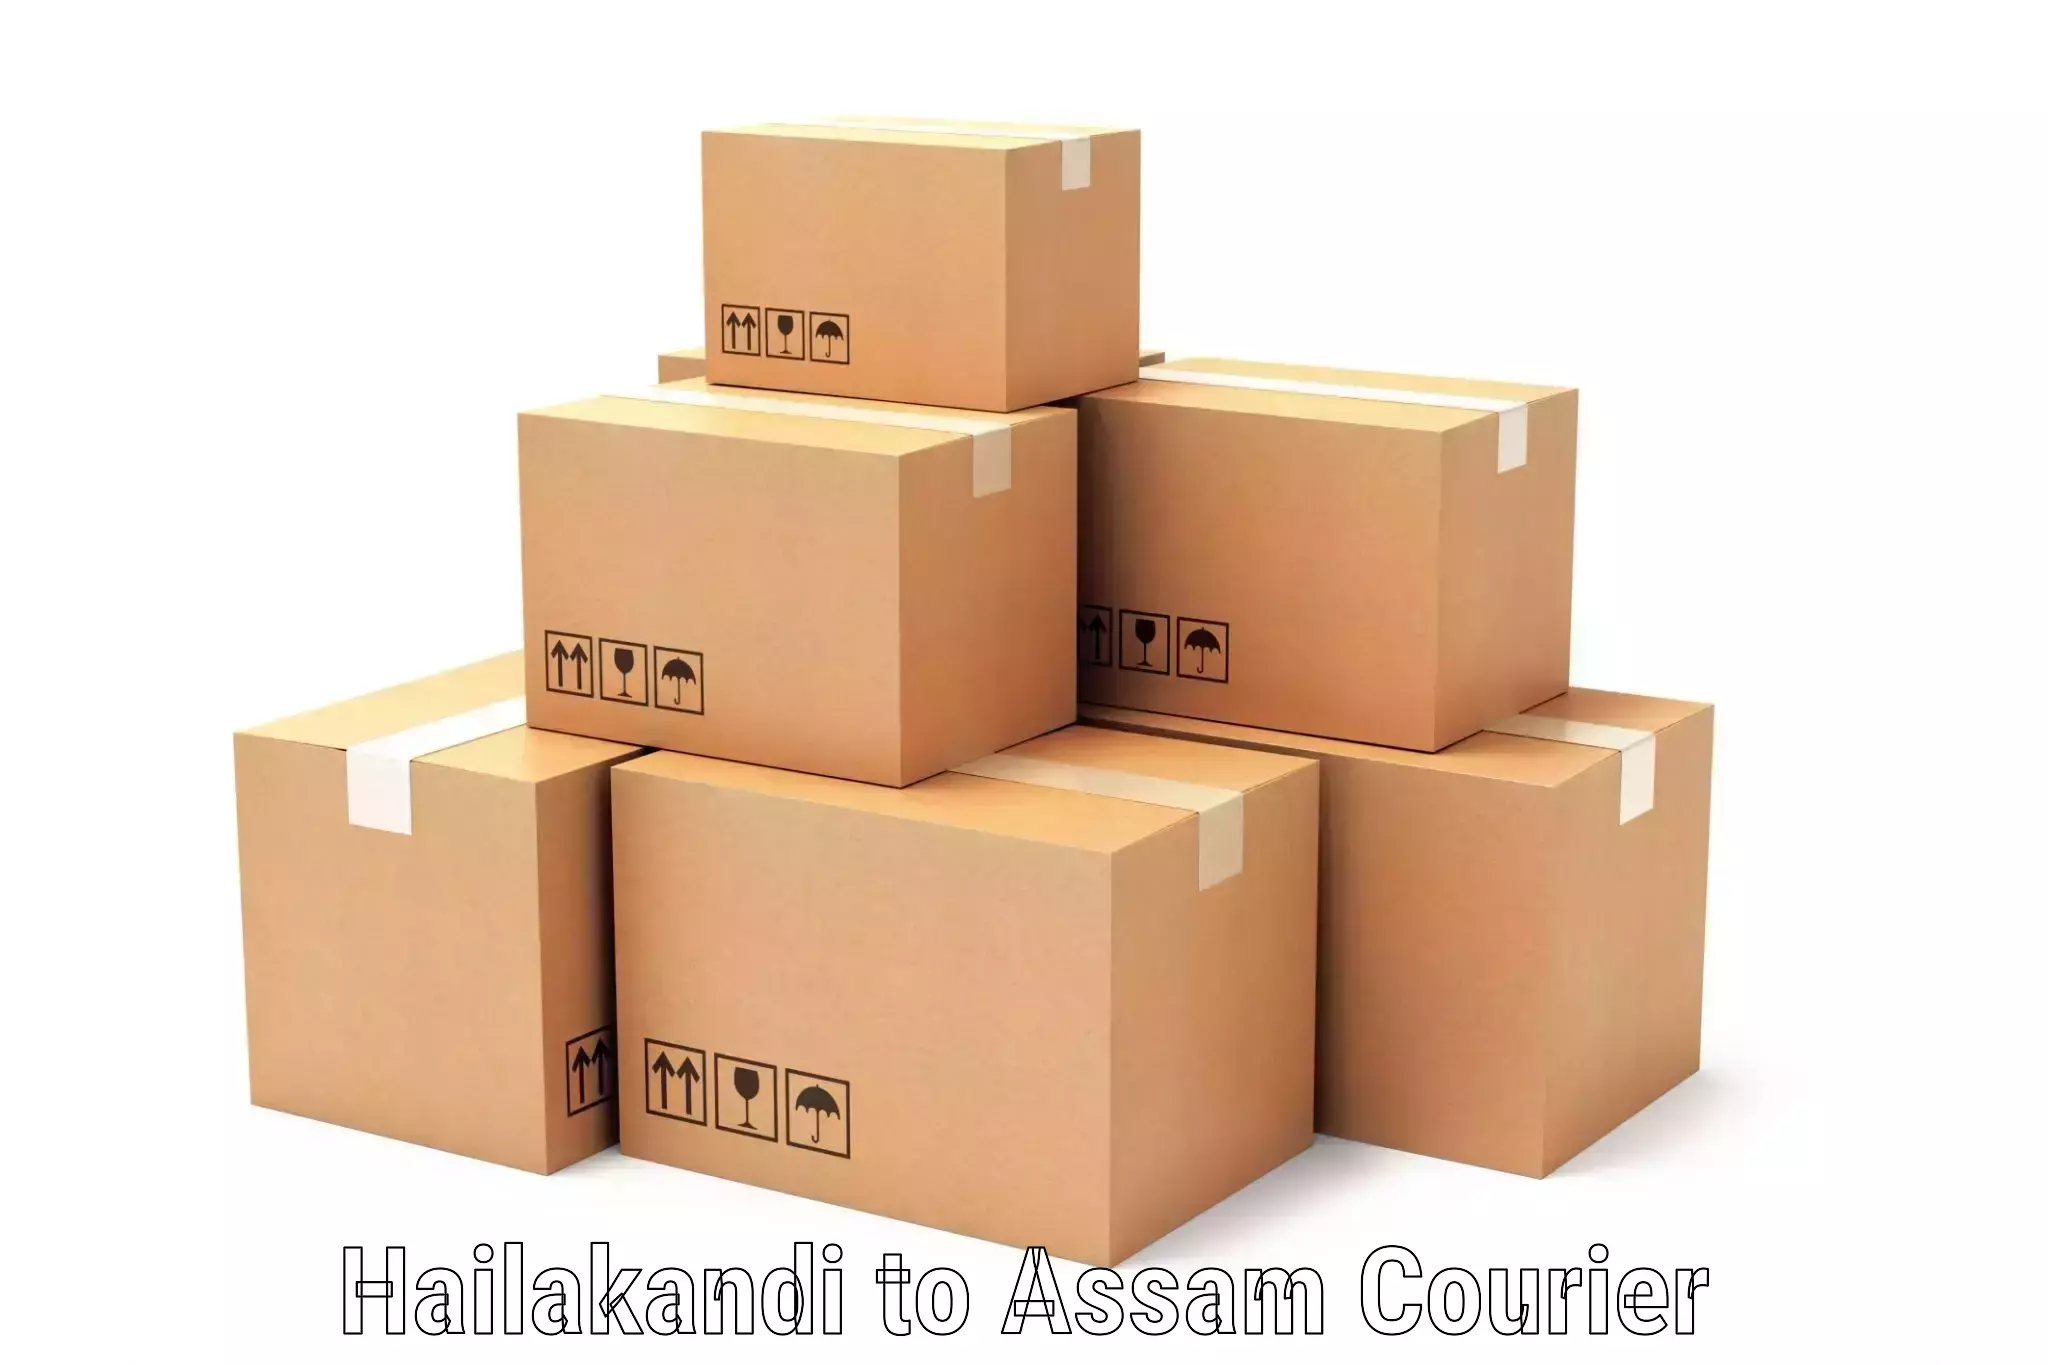 Package consolidation Hailakandi to Bokajan